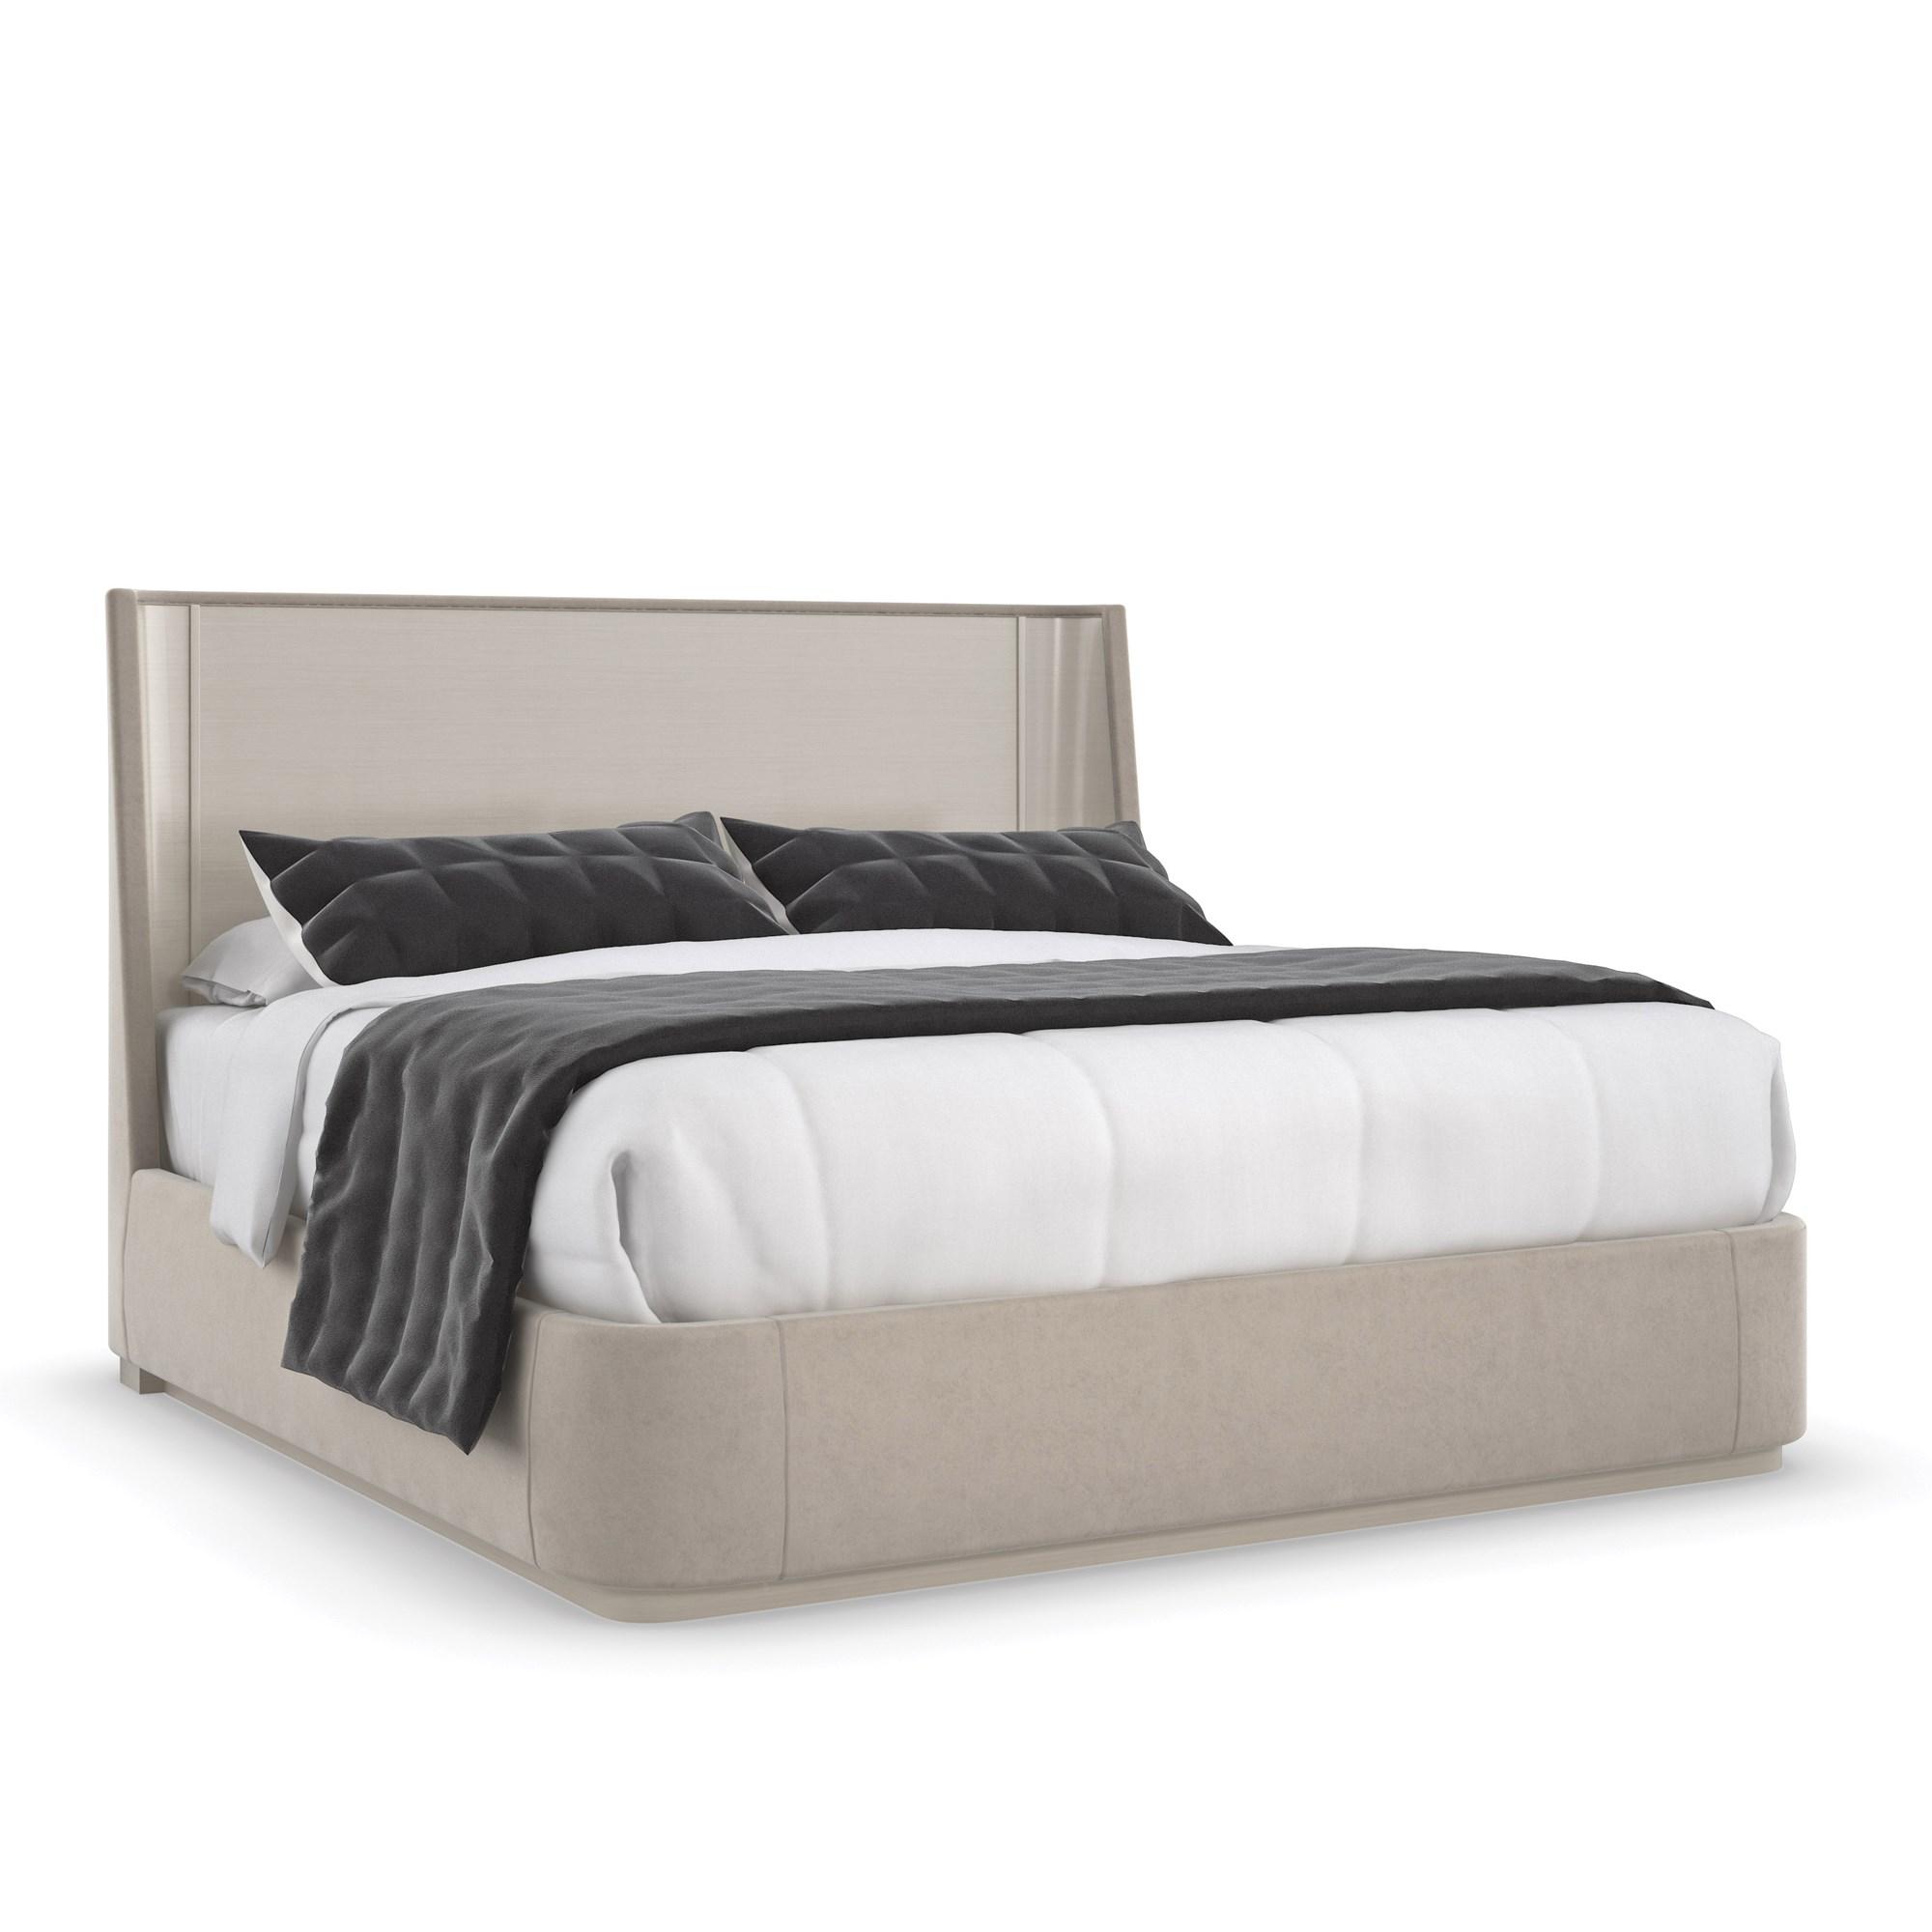 Contemporary Platform Bed DA VITA PLATFORM BED M133-421-122 in Beige Fabric